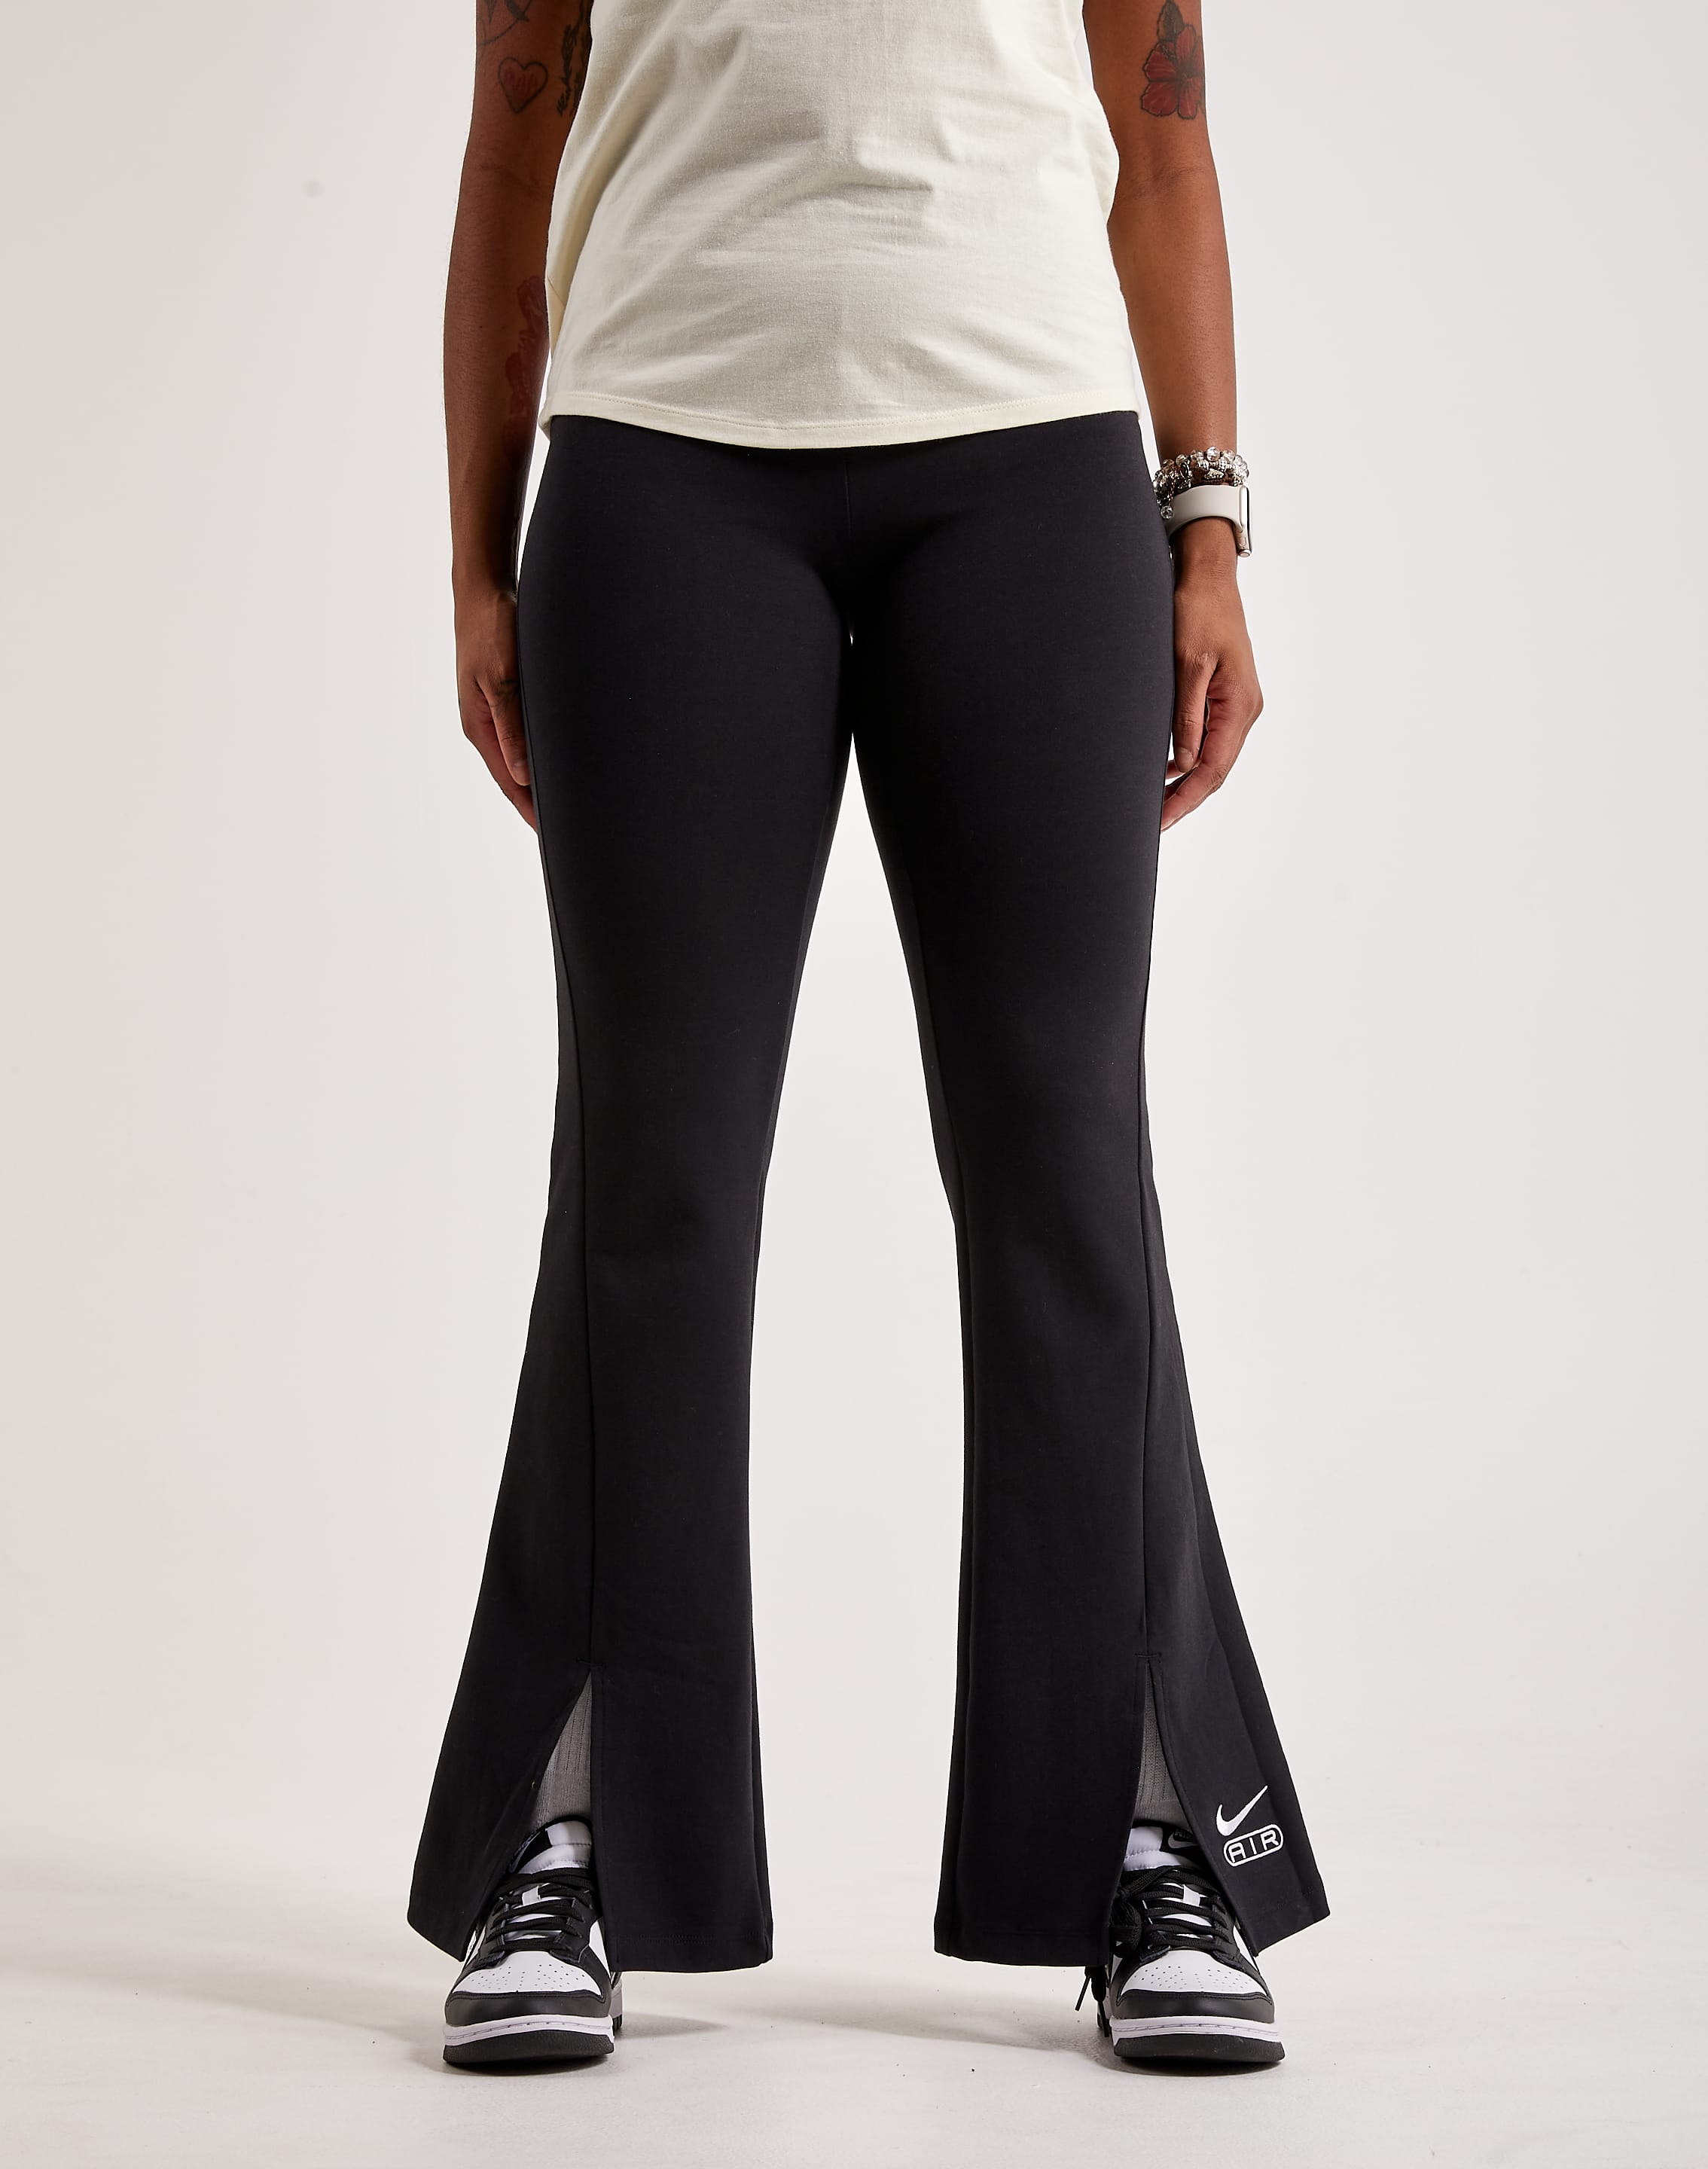 Nike Sportswear Air Women's High-Waisted Flared Leggings. Nike.com